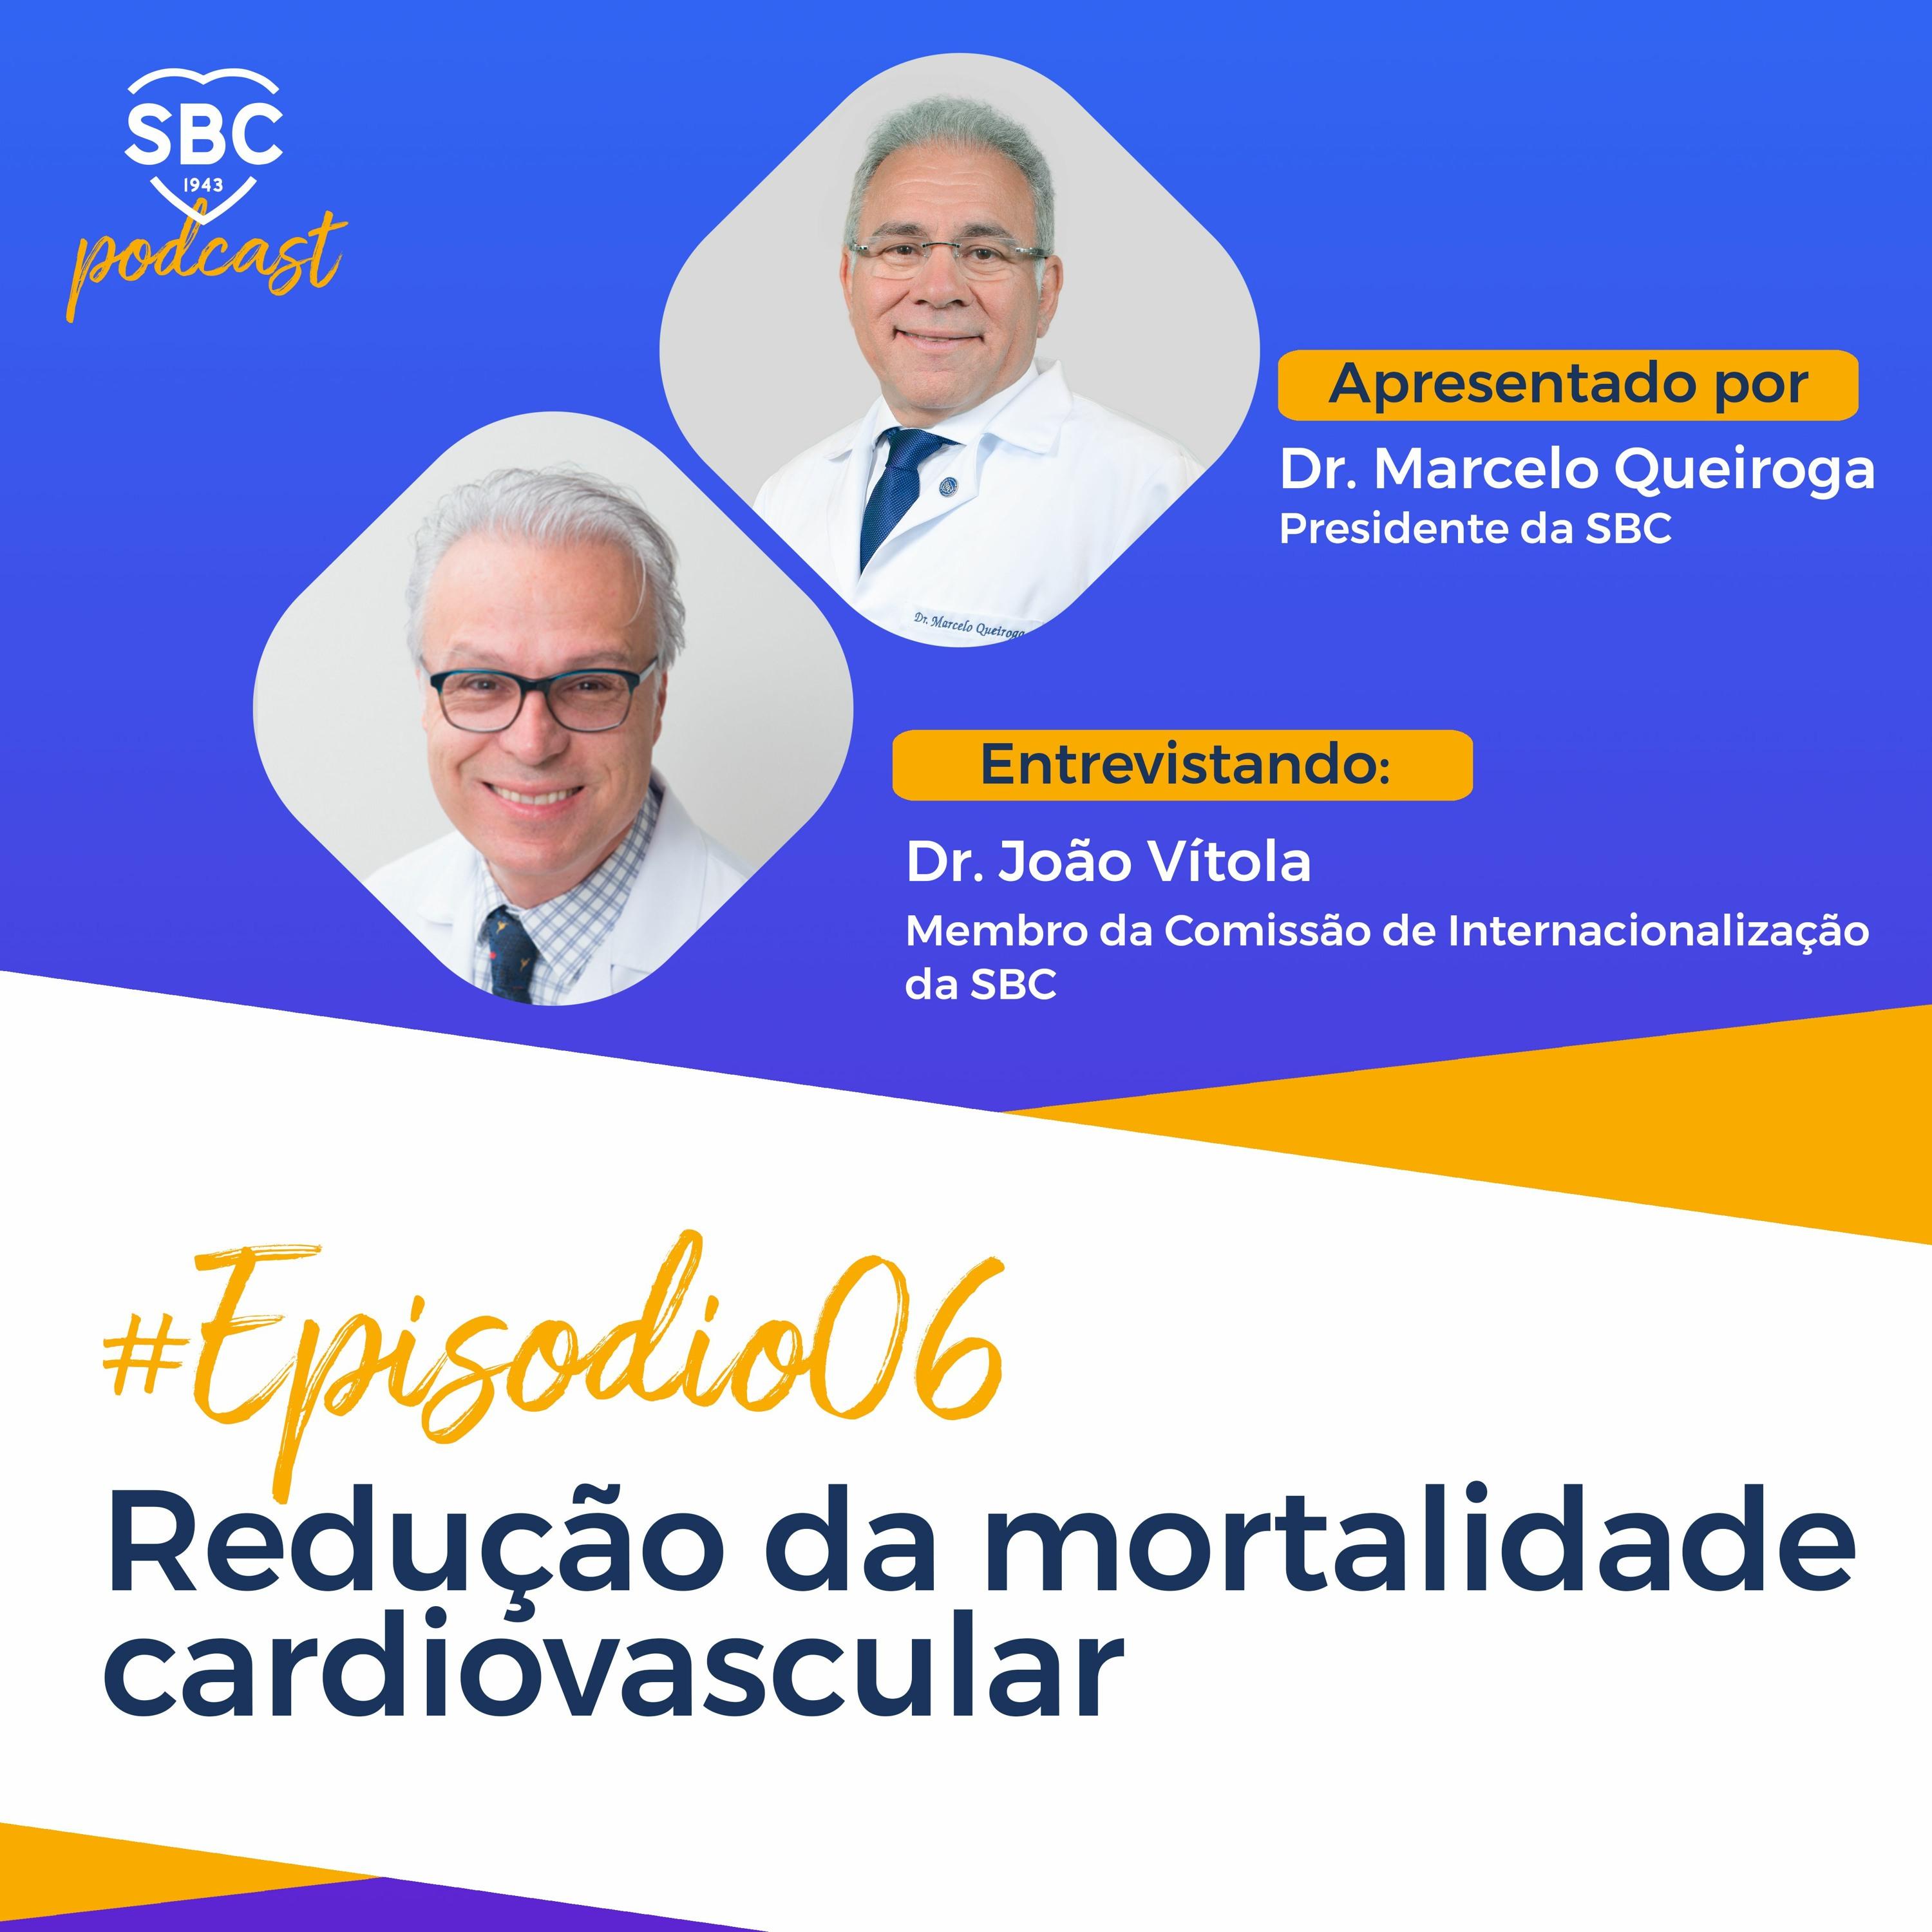 Neste episódio, o Dr. João Vitola fala sobre a importância da prevenção das doenças cardiovasculares e como a SBC atuará para difundir esses conhecimentos entre os cardiologistas brasileiros.